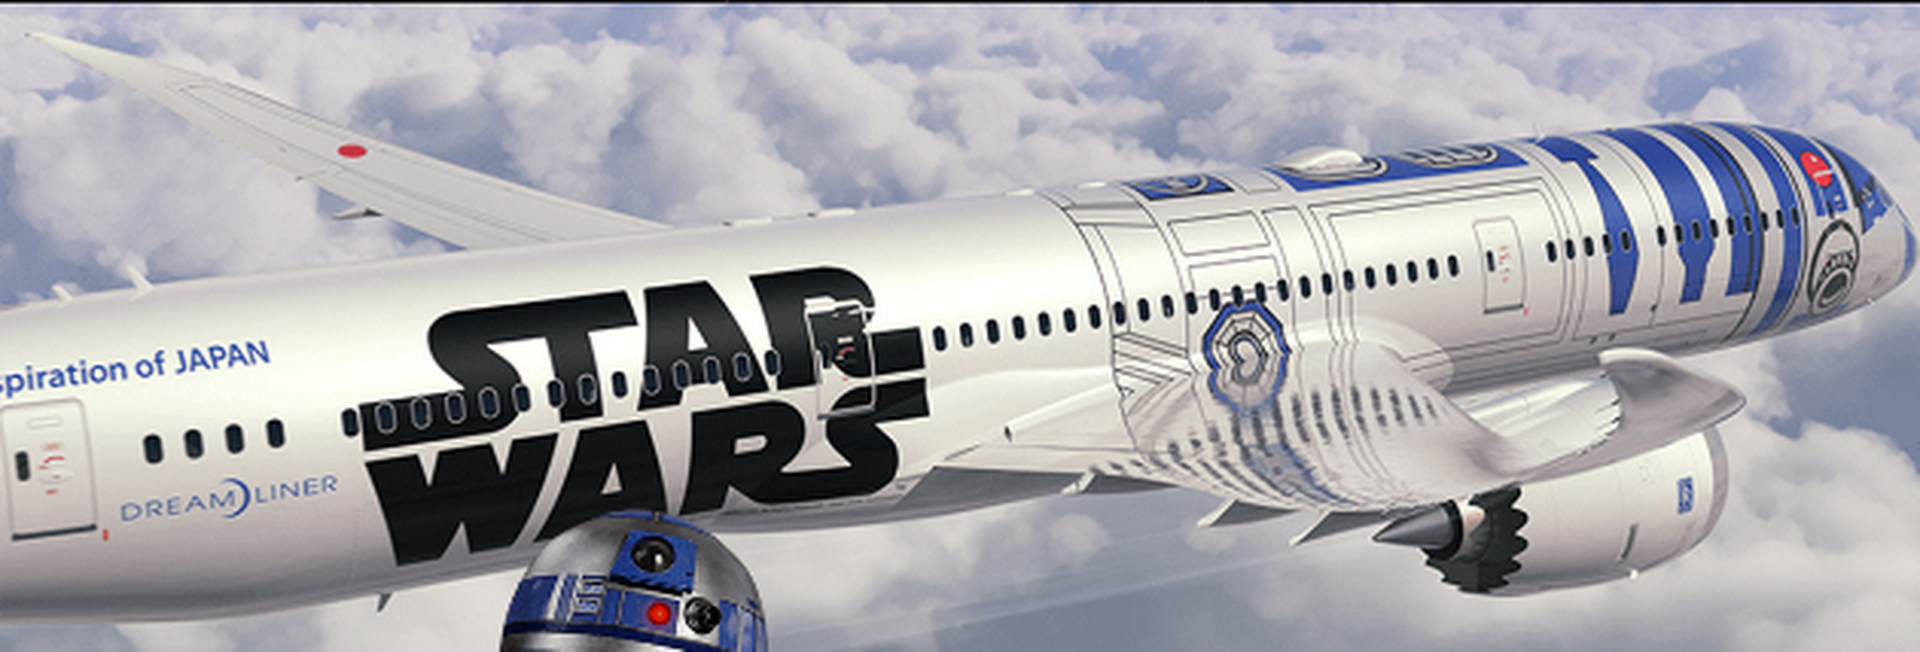 Boeing presenta avión Star Wars